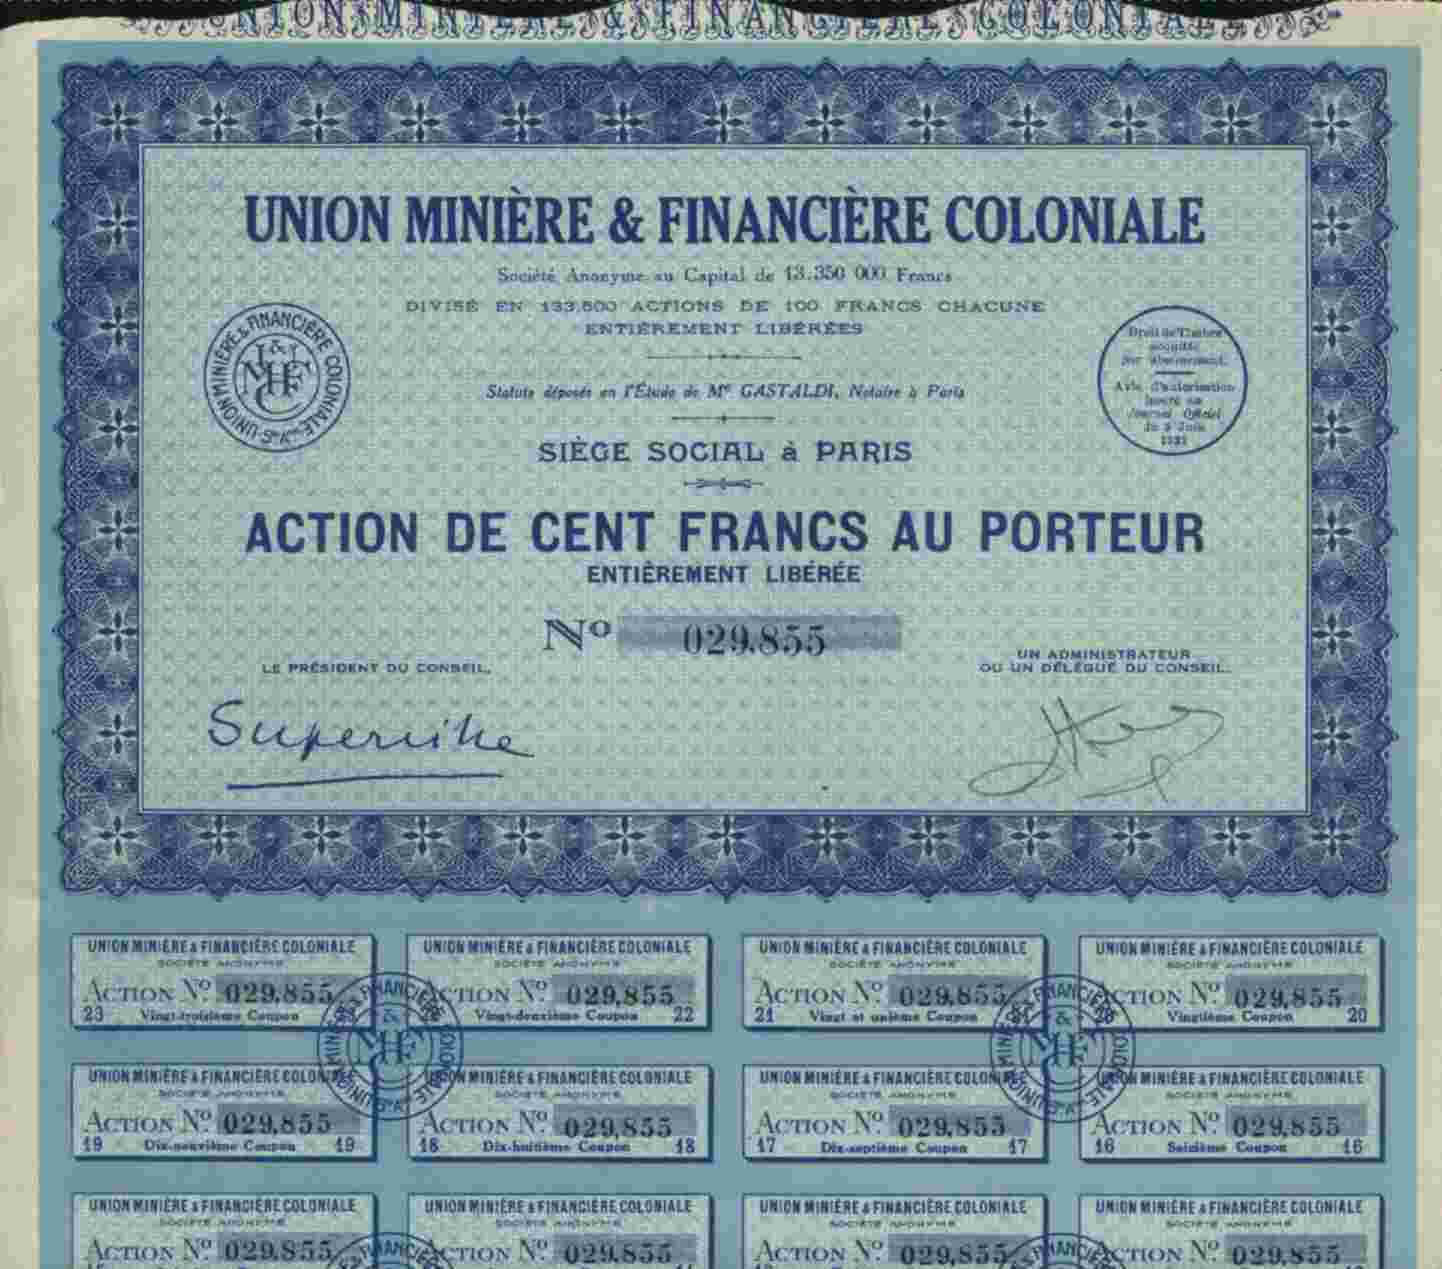 UNION MINIERE & FINANCIERE COLONIALE - Miniere